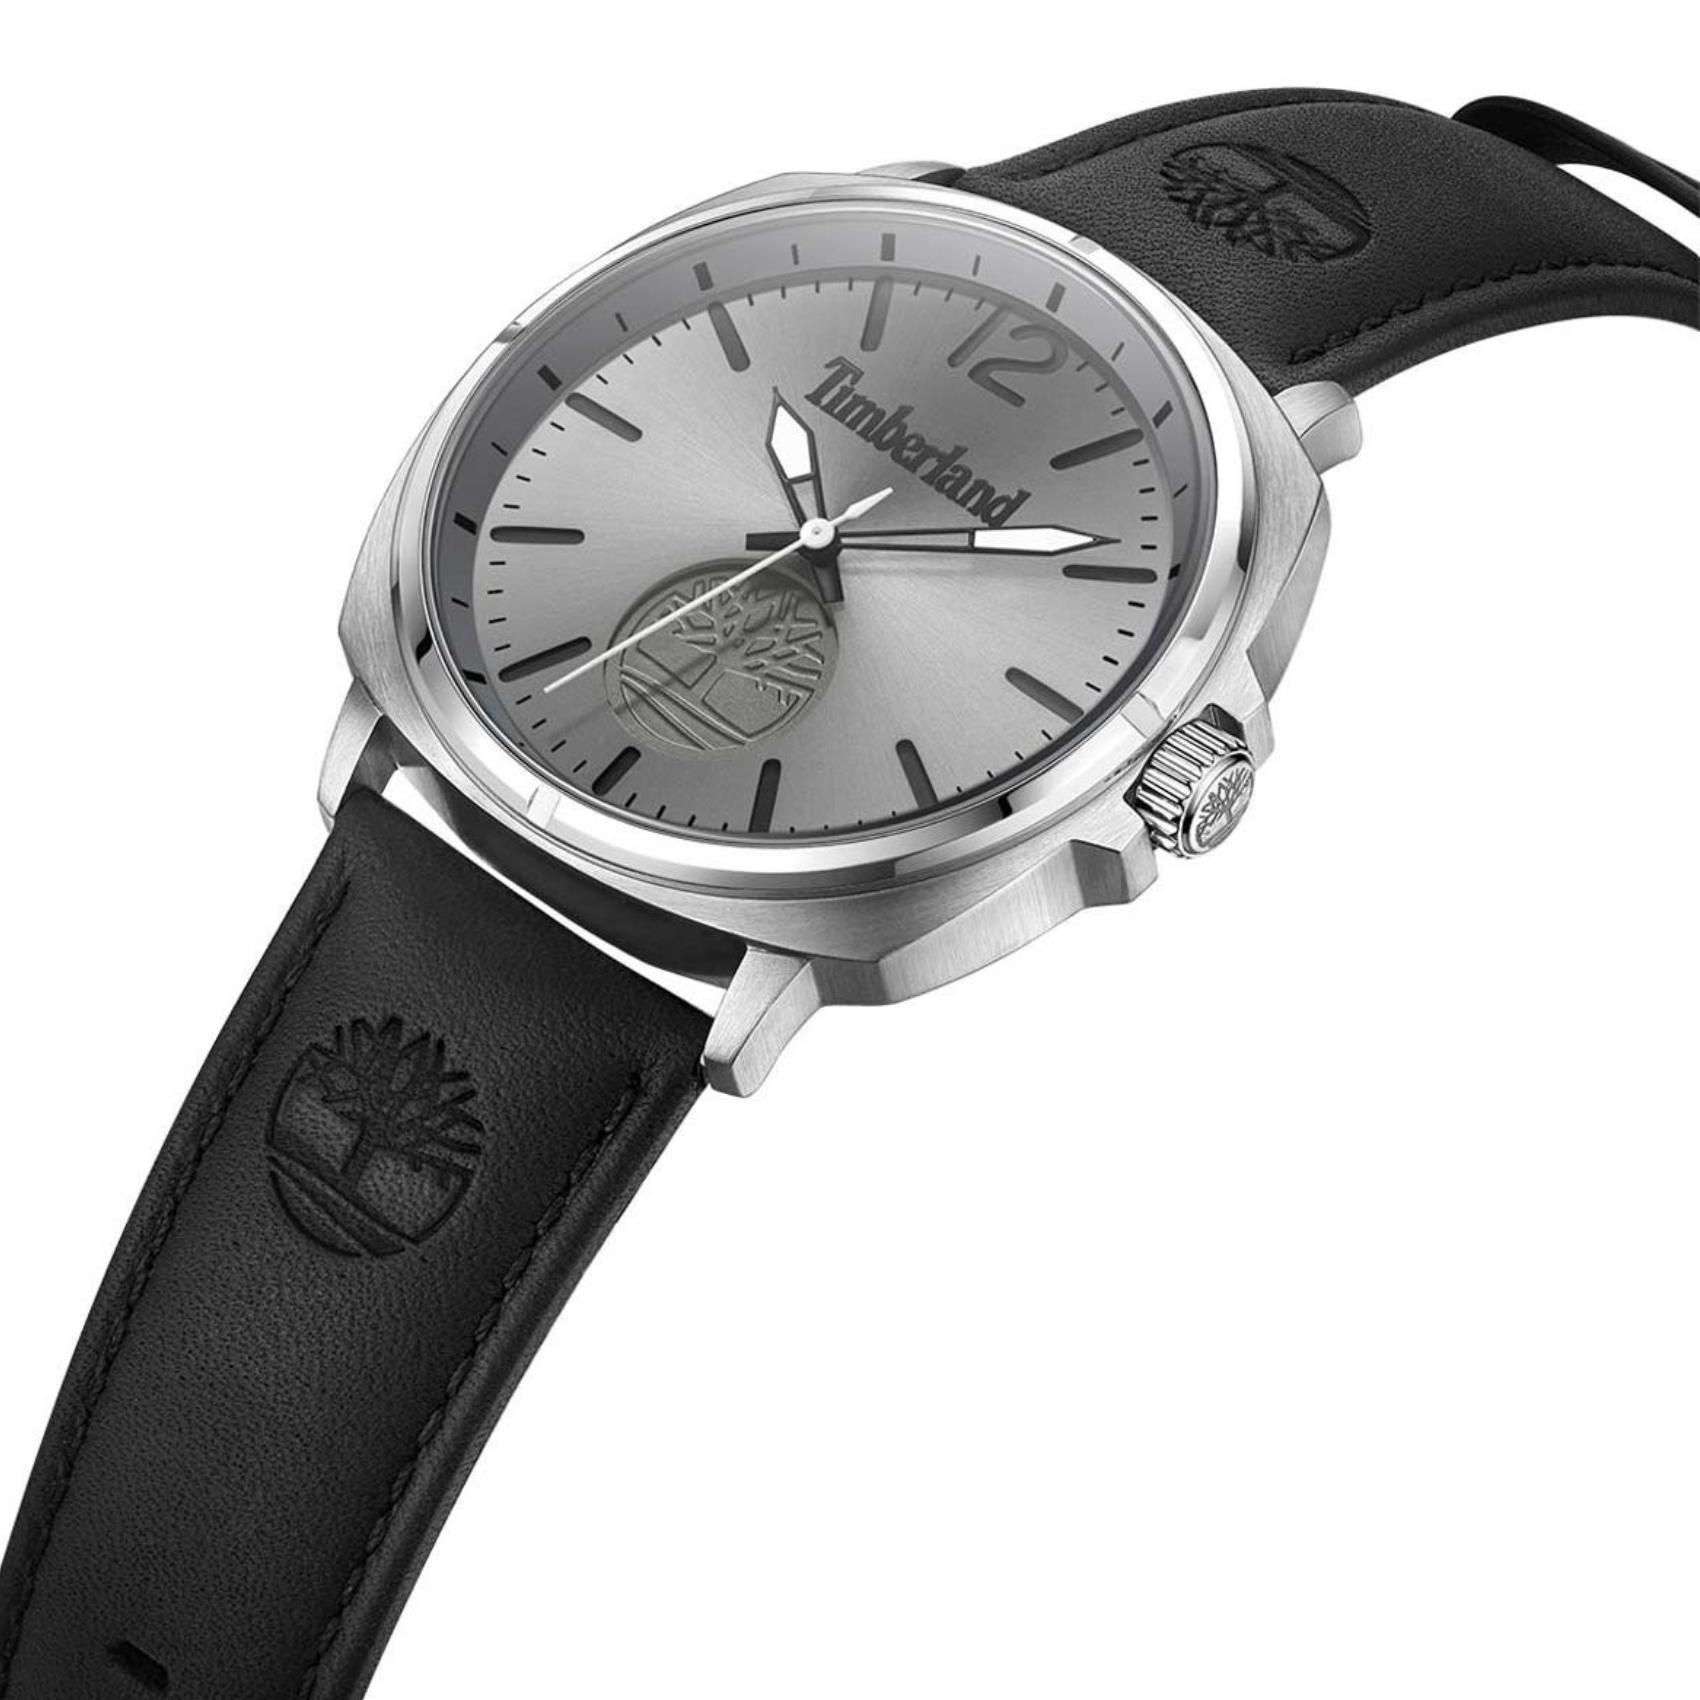 Αντρικό ρολόι Timberland Williston TDWGA0010602 με μαύρο δερμάτινο λουράκι και γκρι καντράν διαμέτρου 44mm.